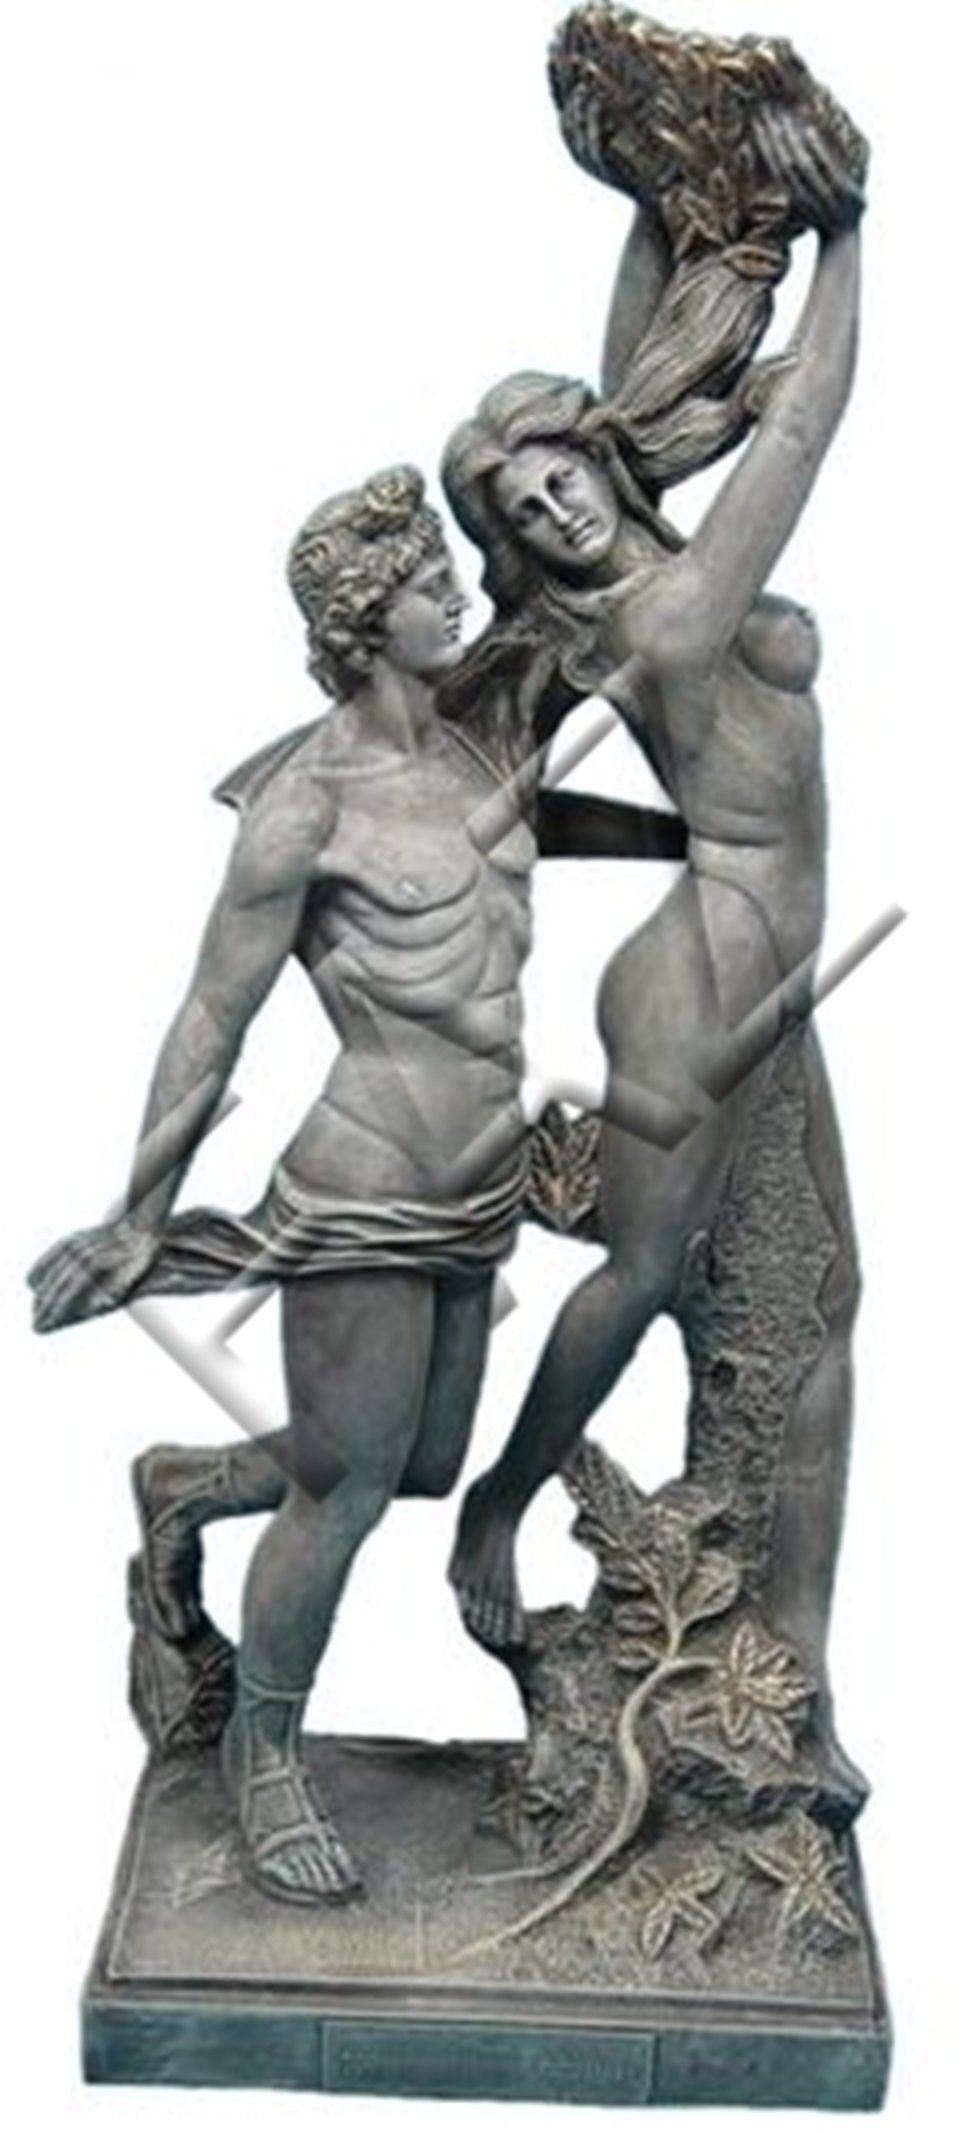 JVmoebel Skulptur Design Griechische Figur Statue Skulptur Figuren Skulpturen Dekoration Deko Neu Grau